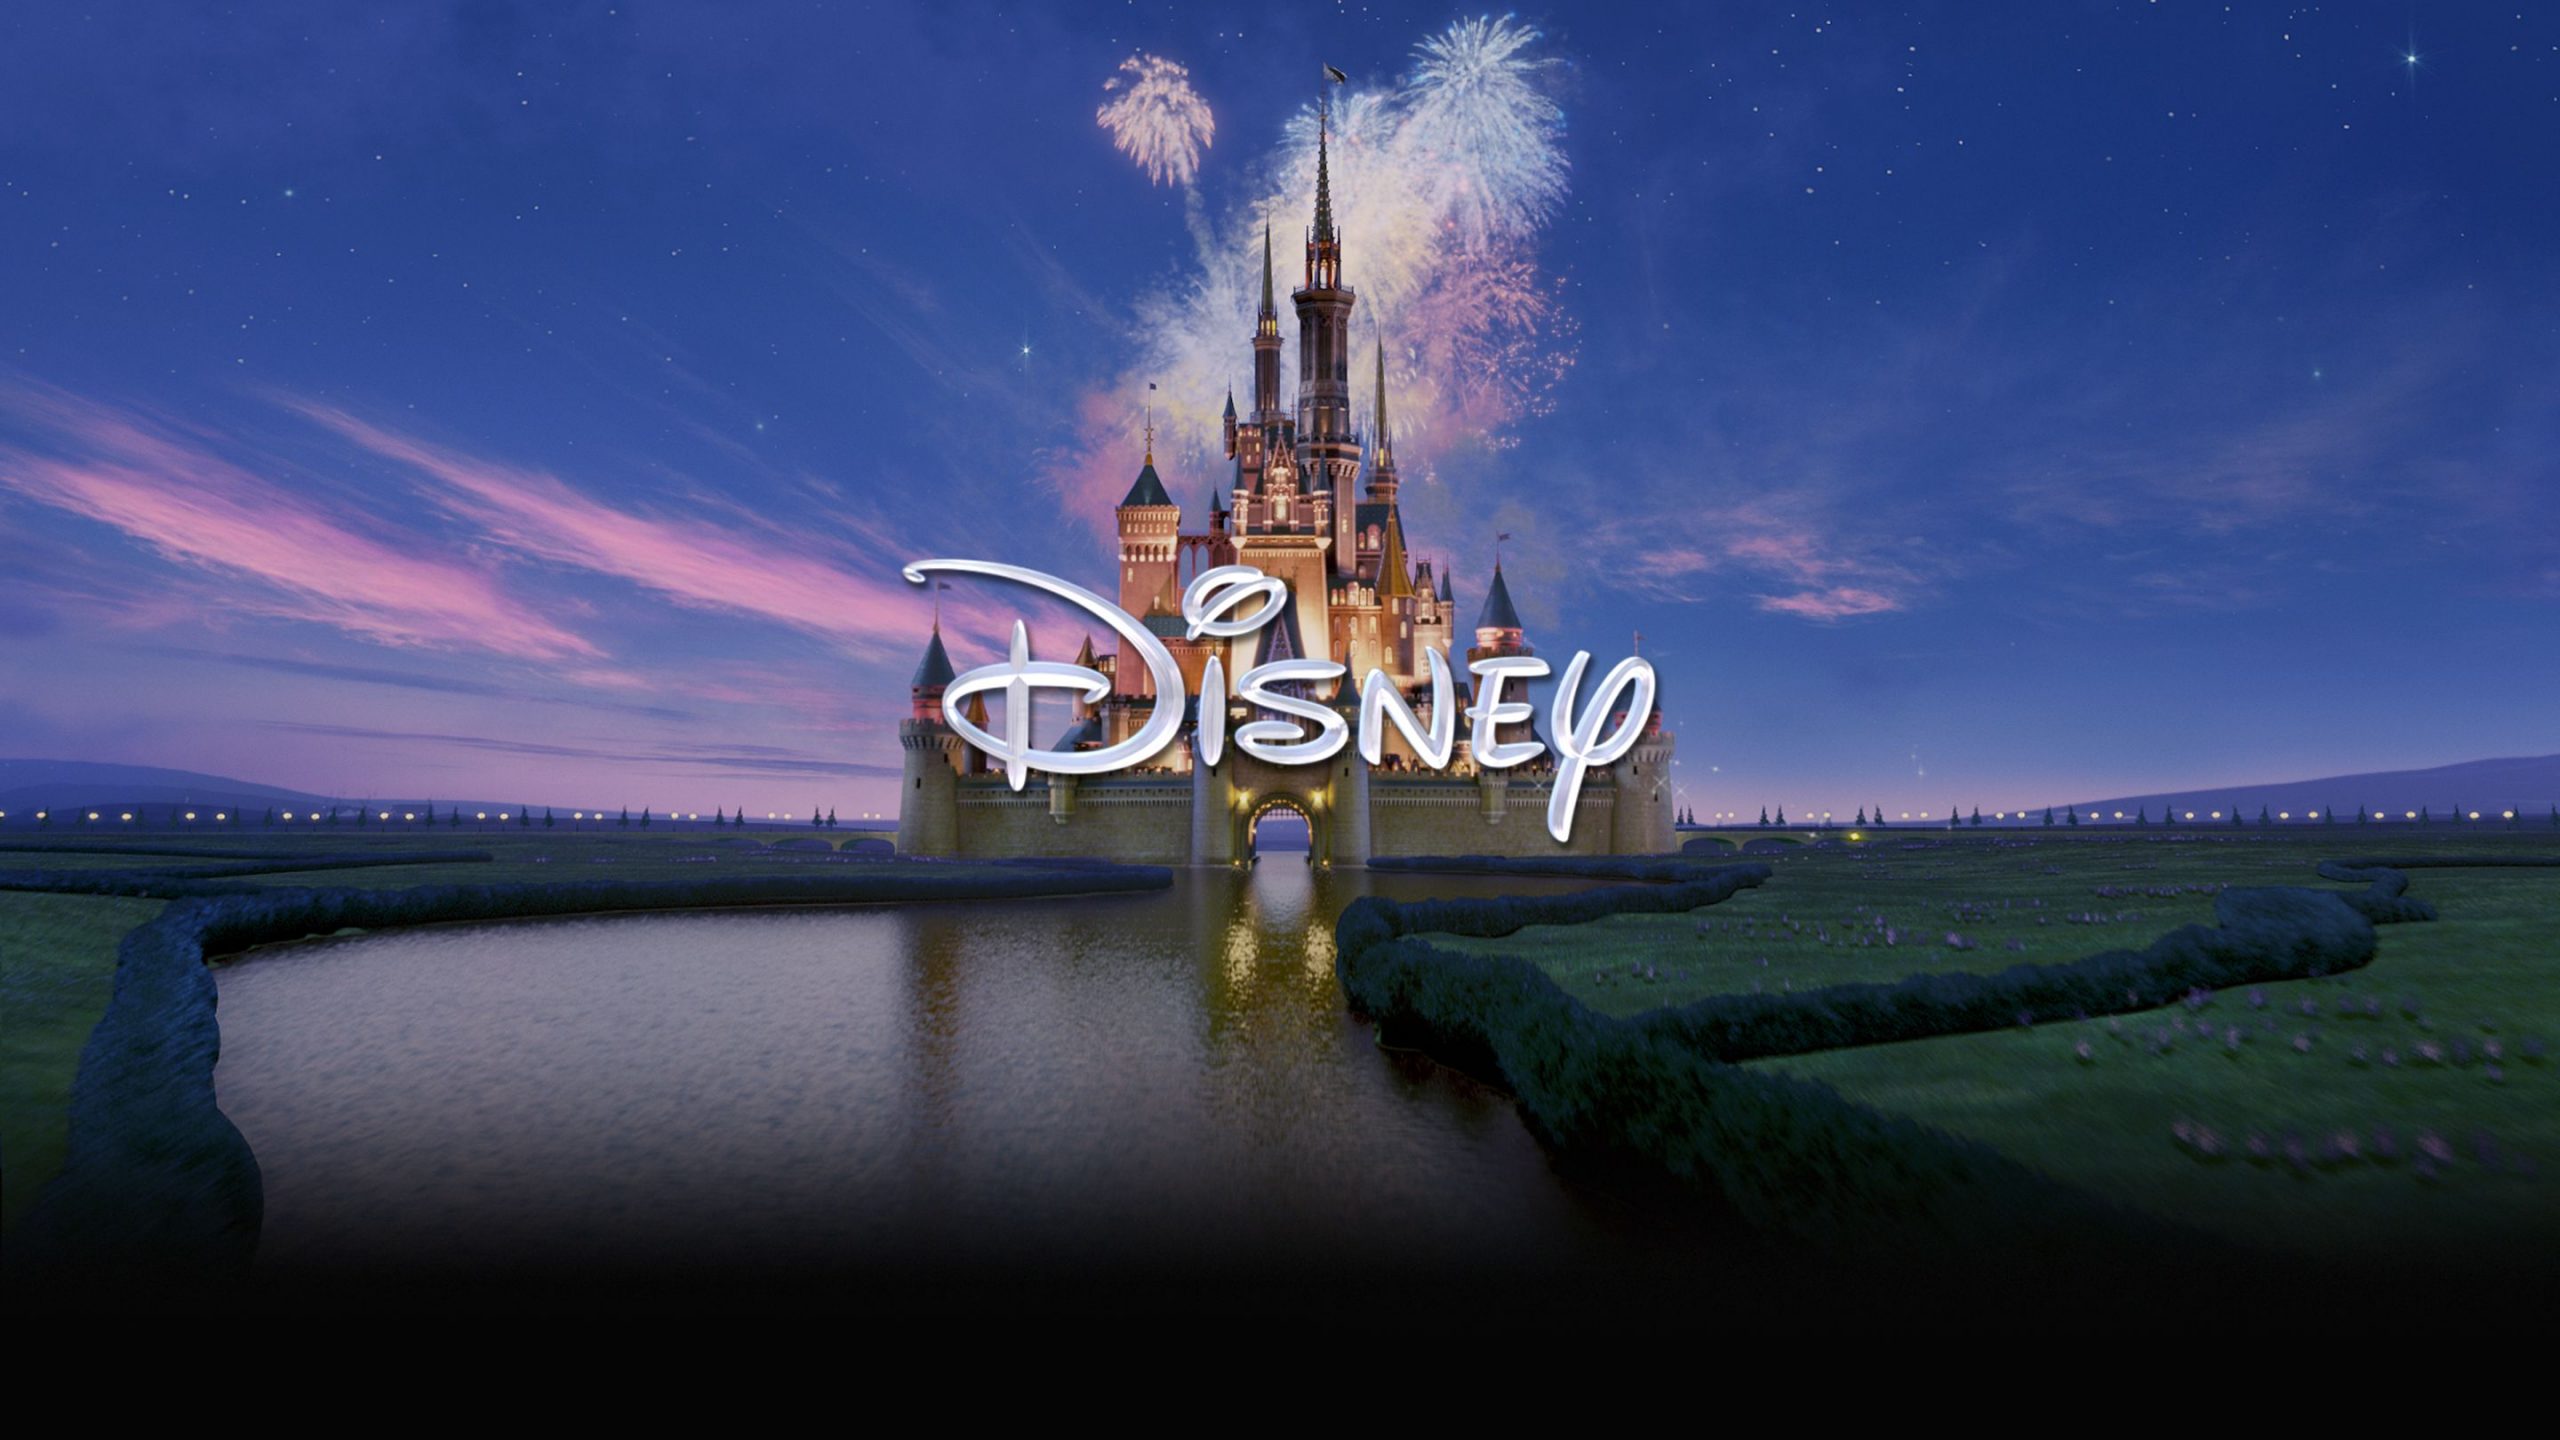 СМИ: в марте из российских онлайн-кинотеатров уберут фильмы и сериалы Disney